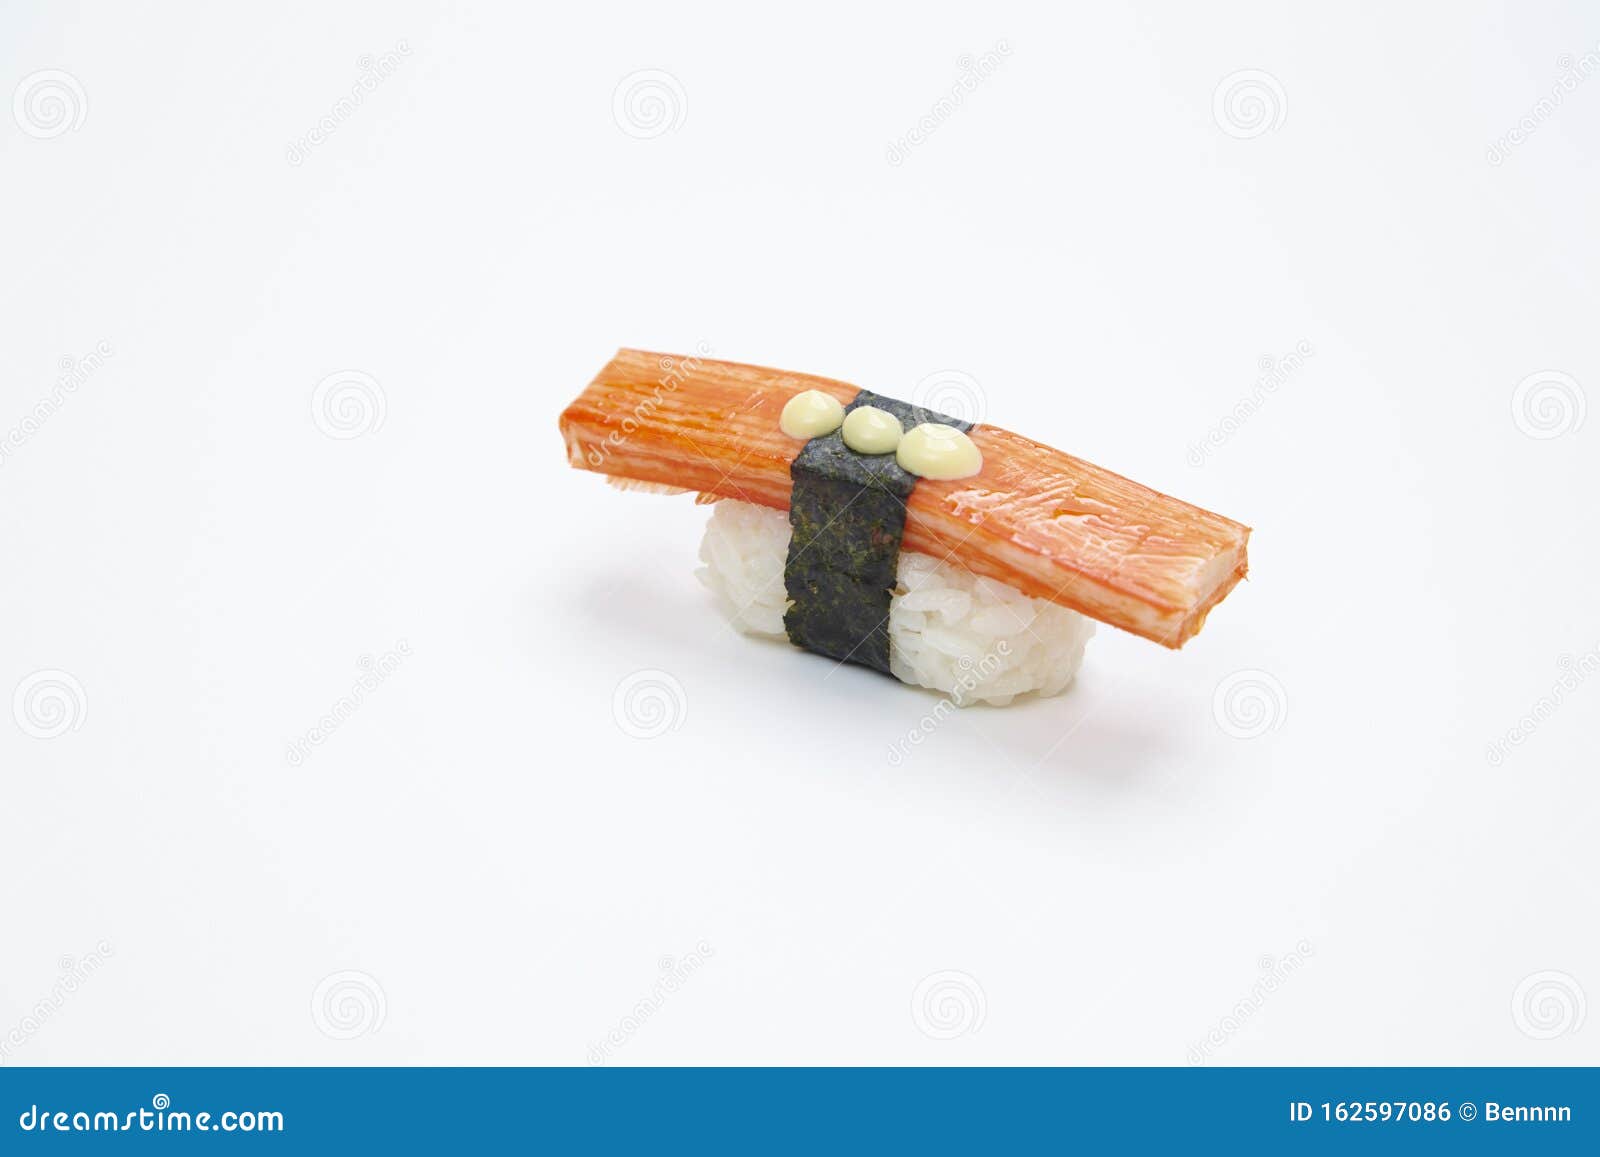 Nigiri Sushi Made Of Kani Kama On White Background Stock Photo ...